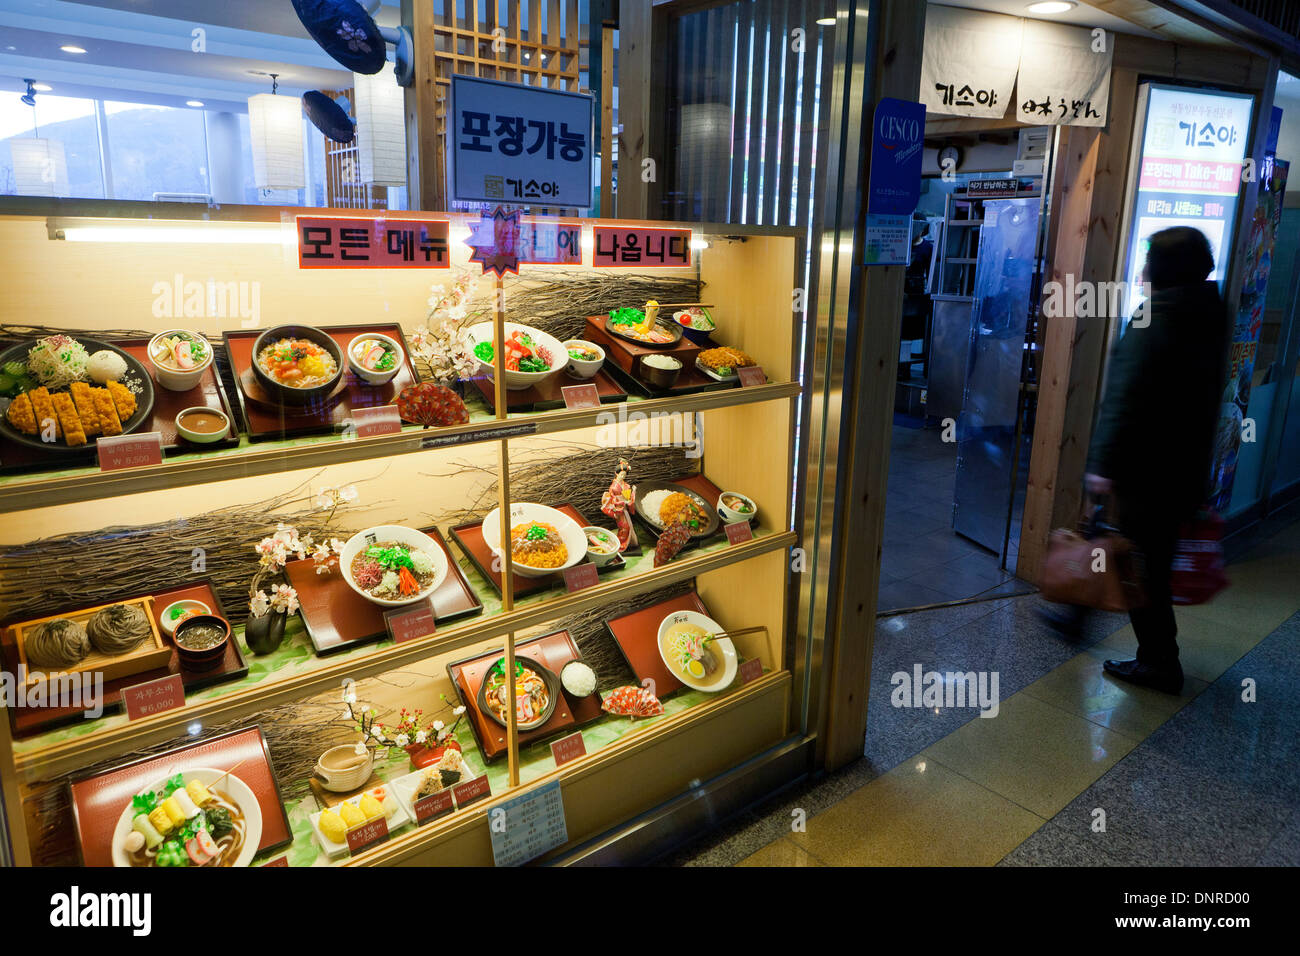 Modèle alimentaire en plastique affichage cas au restaurant - Séoul, Corée du Sud Banque D'Images